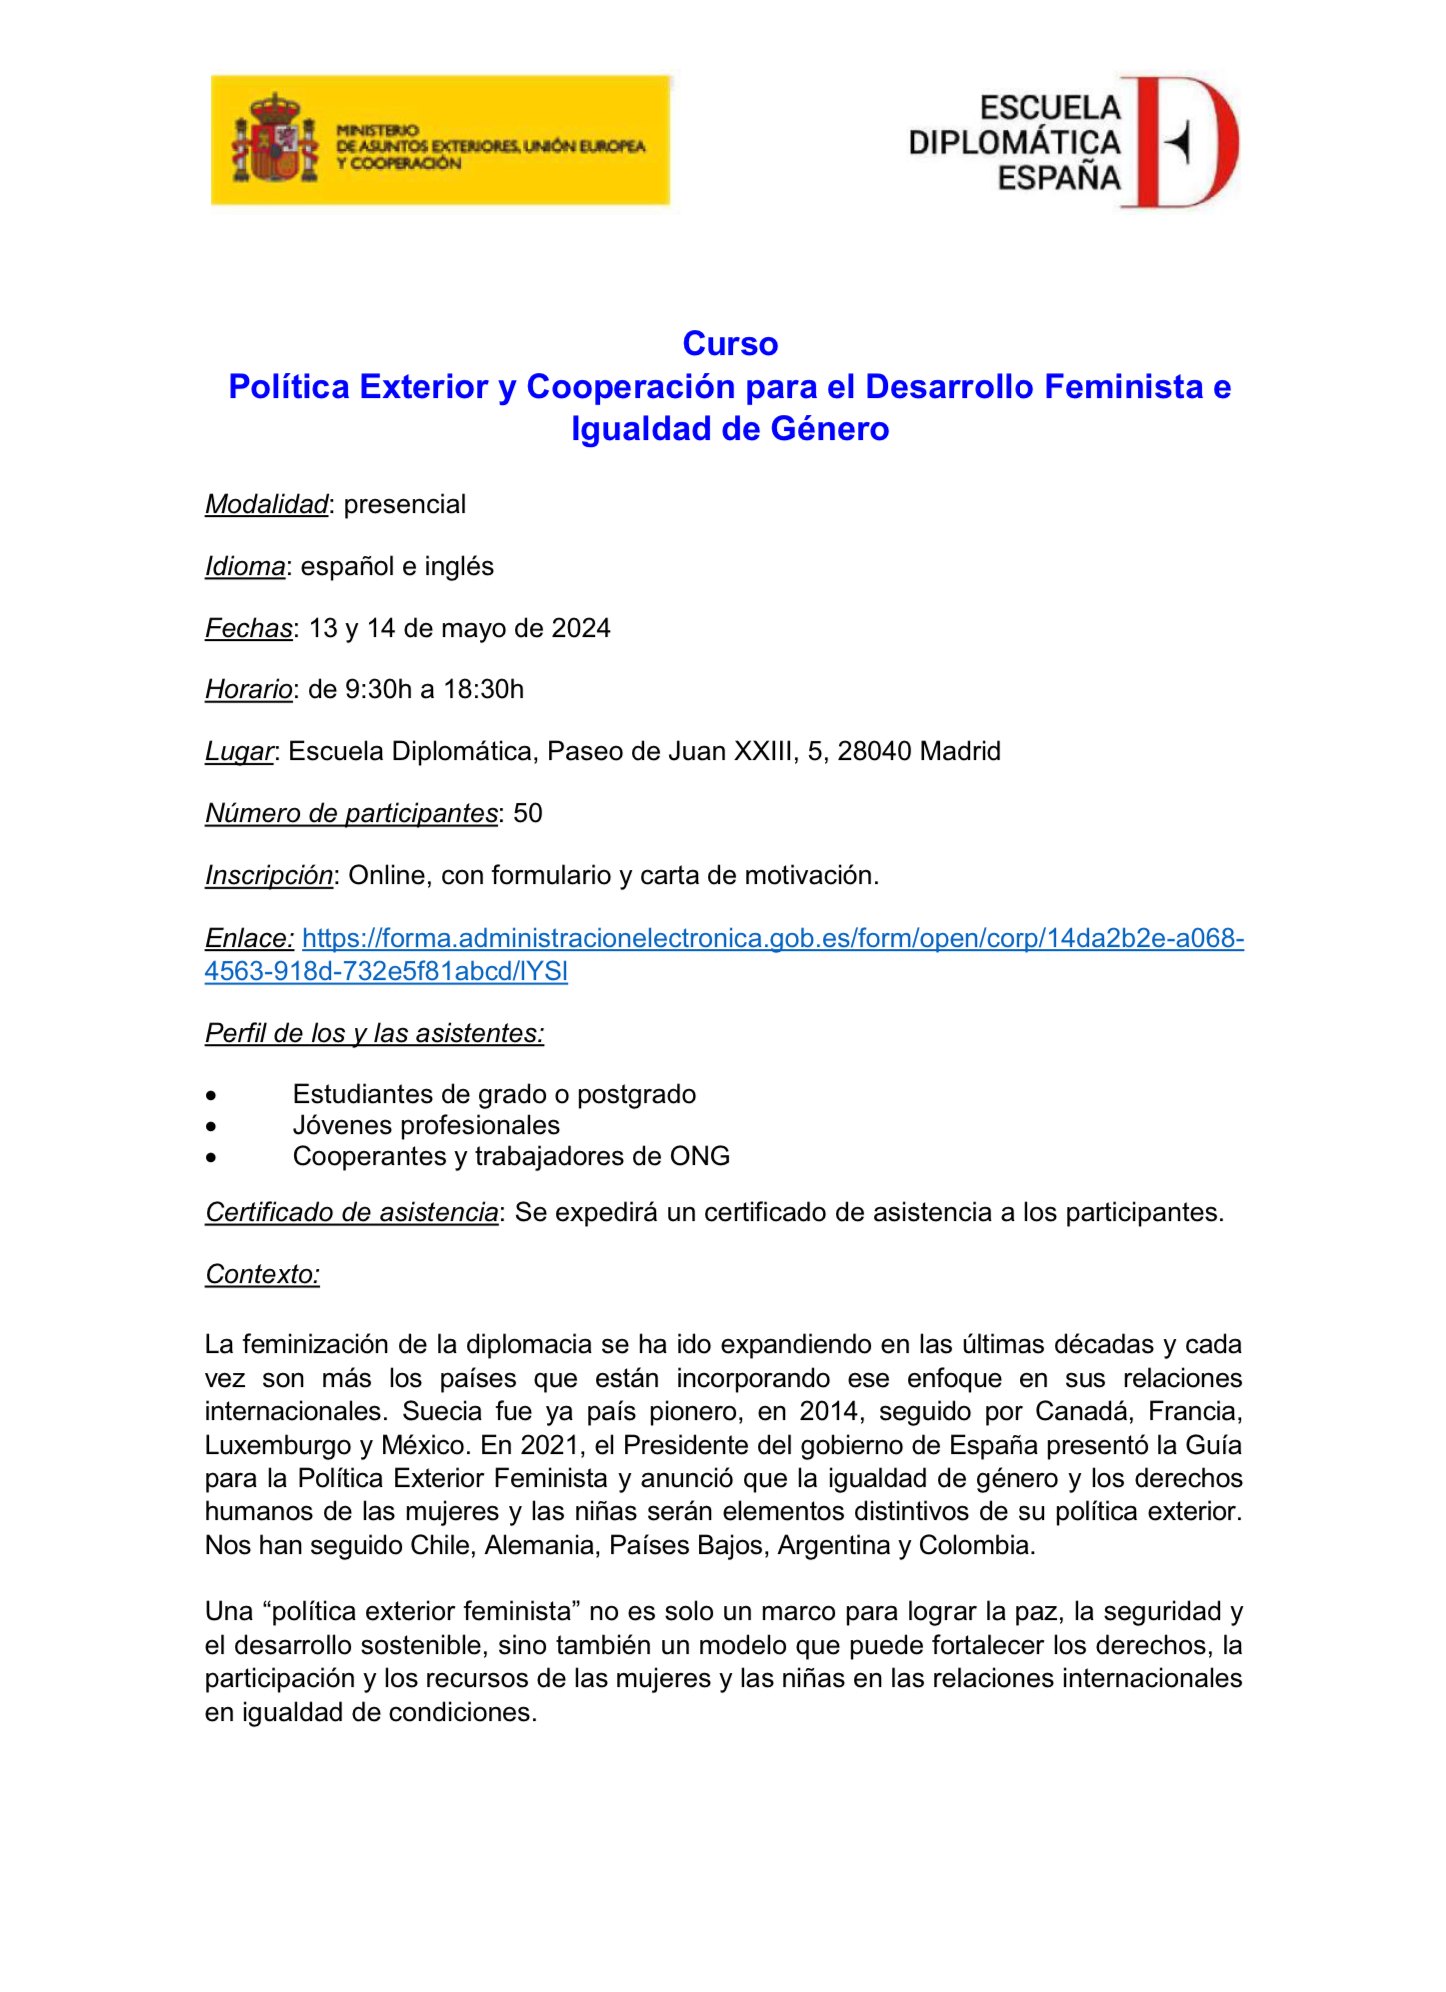 II Curso sobre Política Exterior y Cooperación para el Desarrollo Feminista e Igualdad de Género